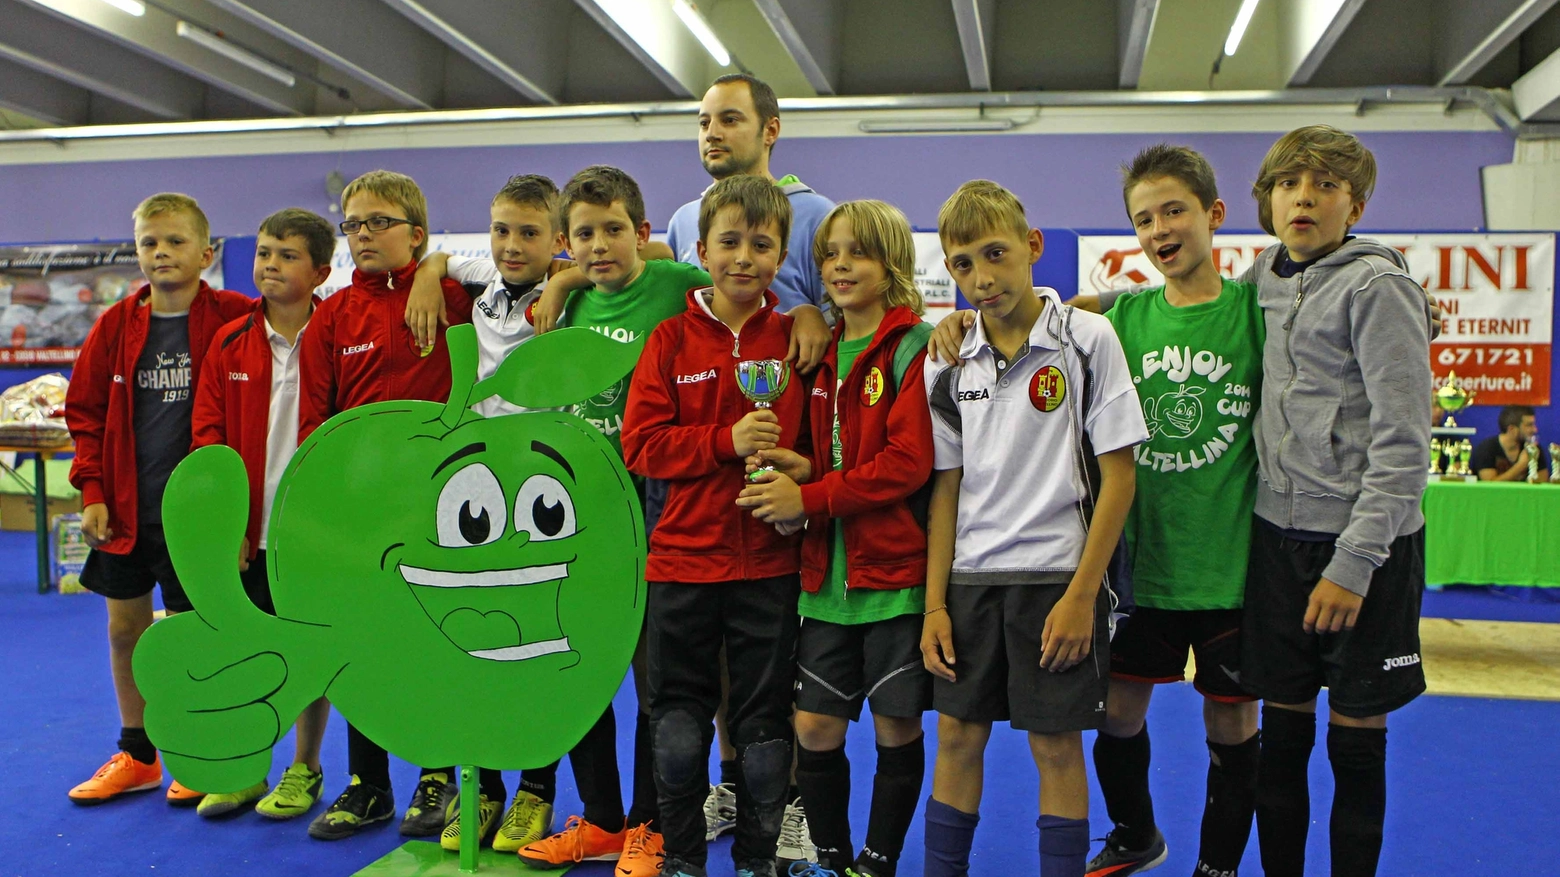 La premiazione del torneo giovanile Enjoy Valtellina del 2015